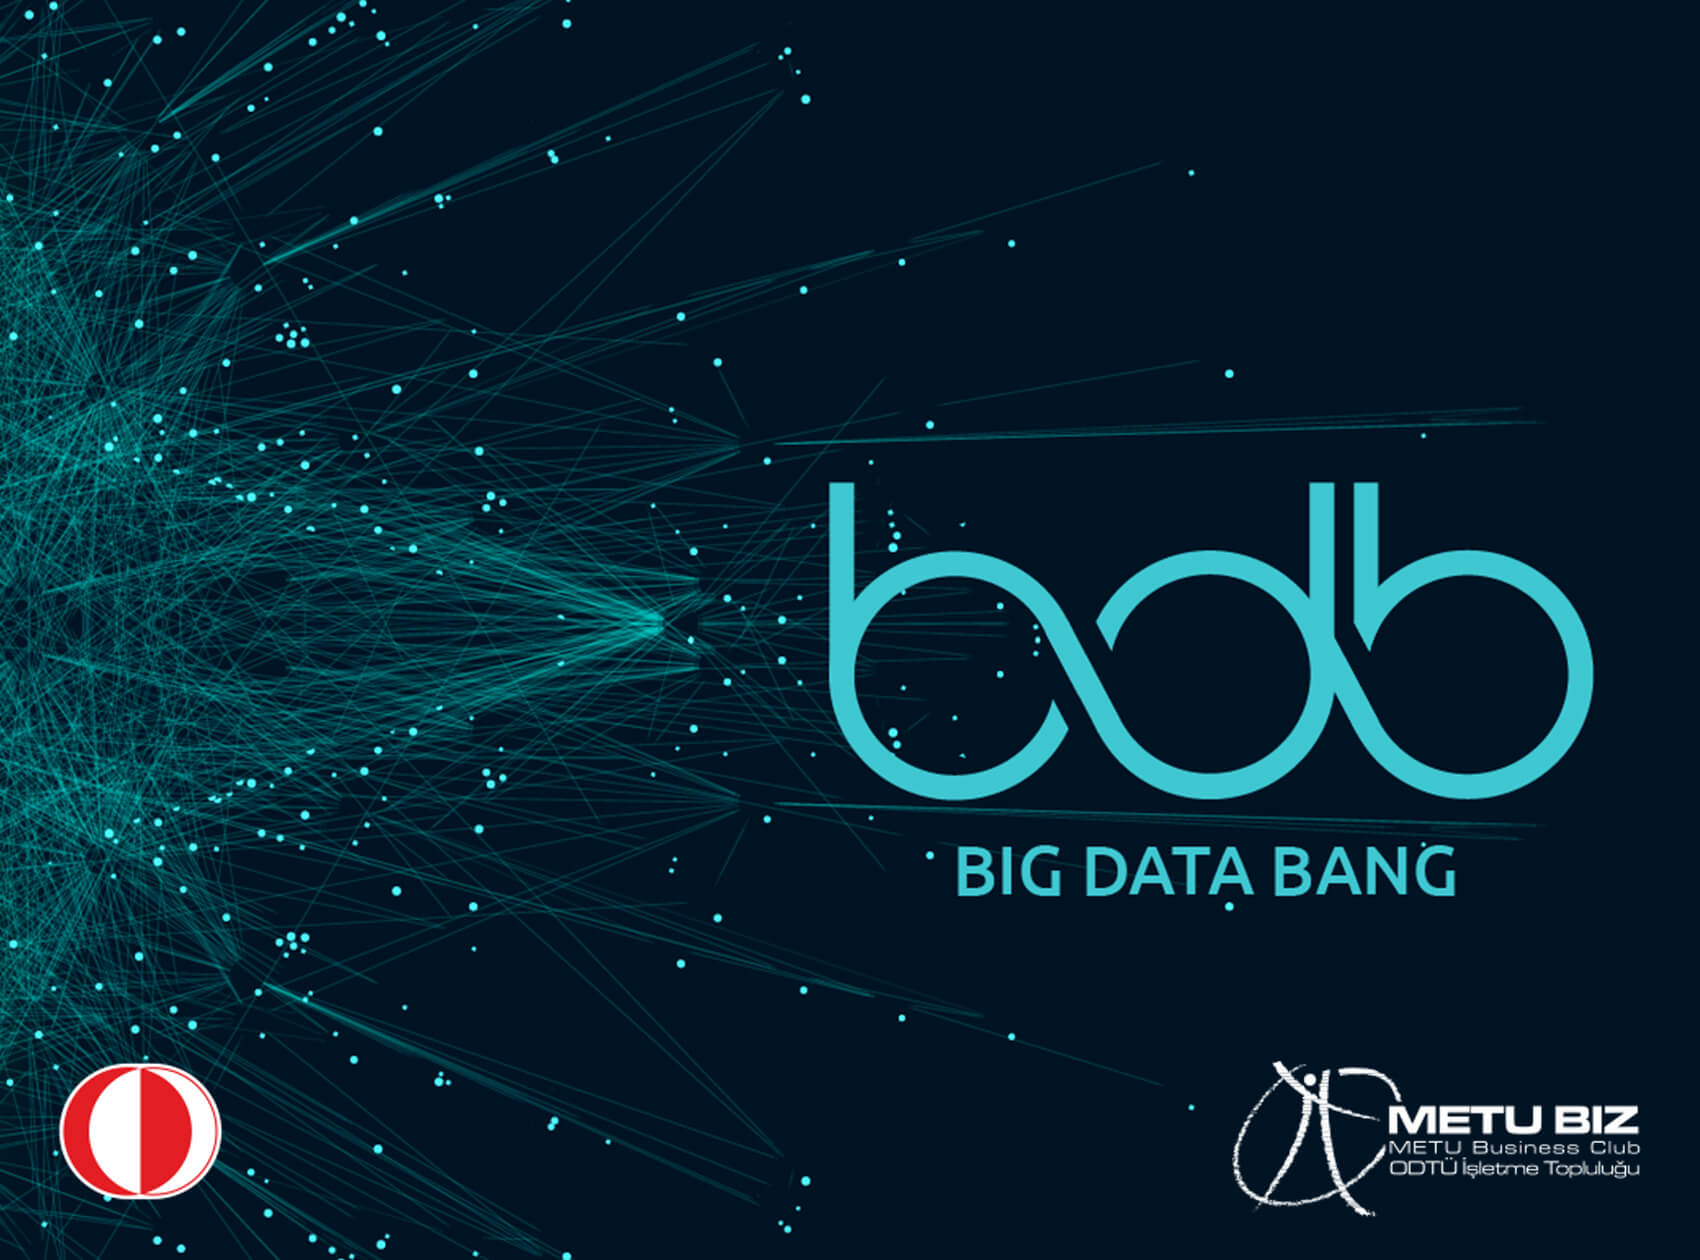 Big Data Bang